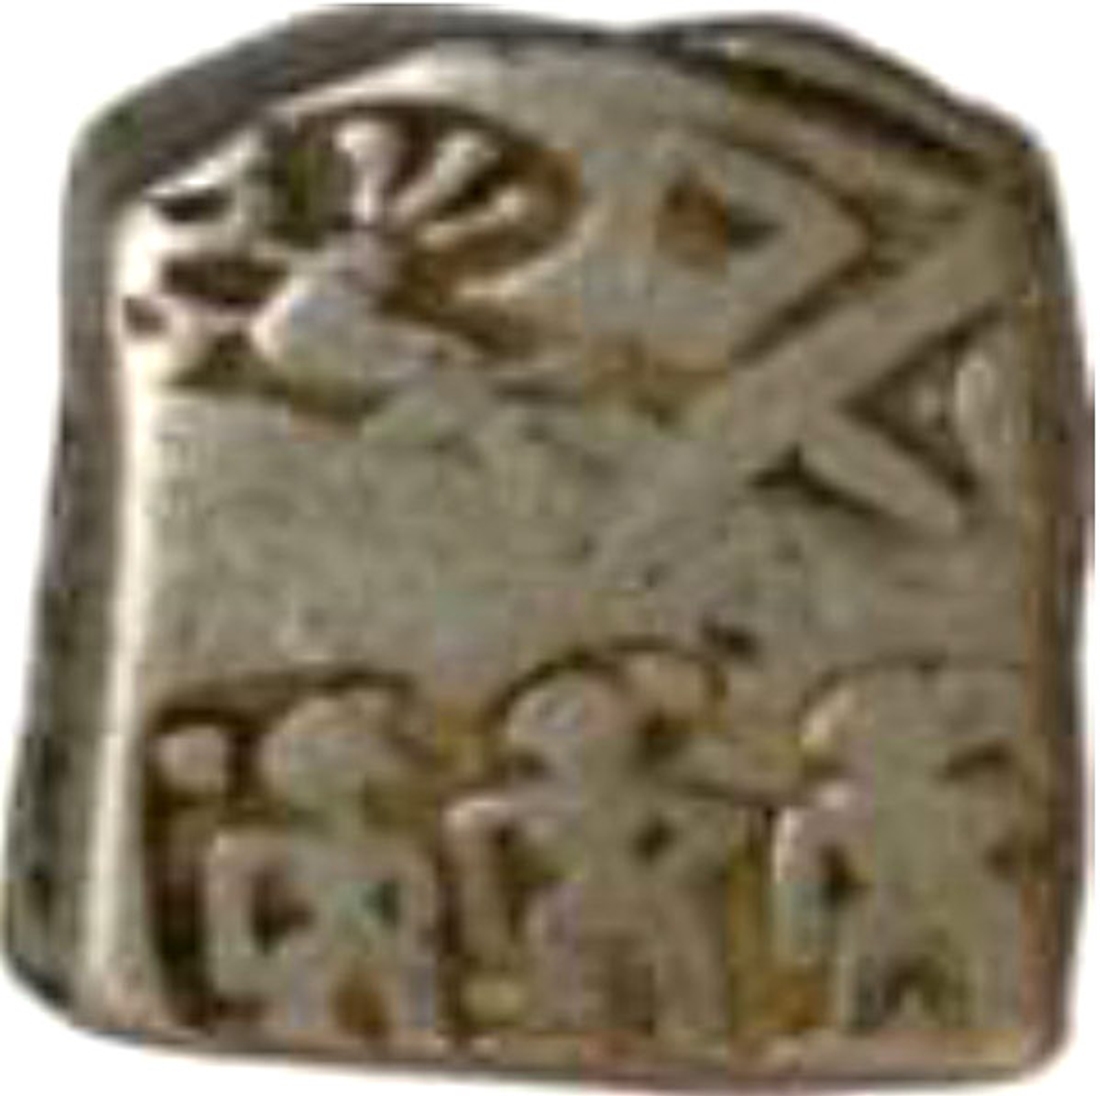 Punch Marked Silver Karshapna of Chandragupta of Maurya Dynasty.